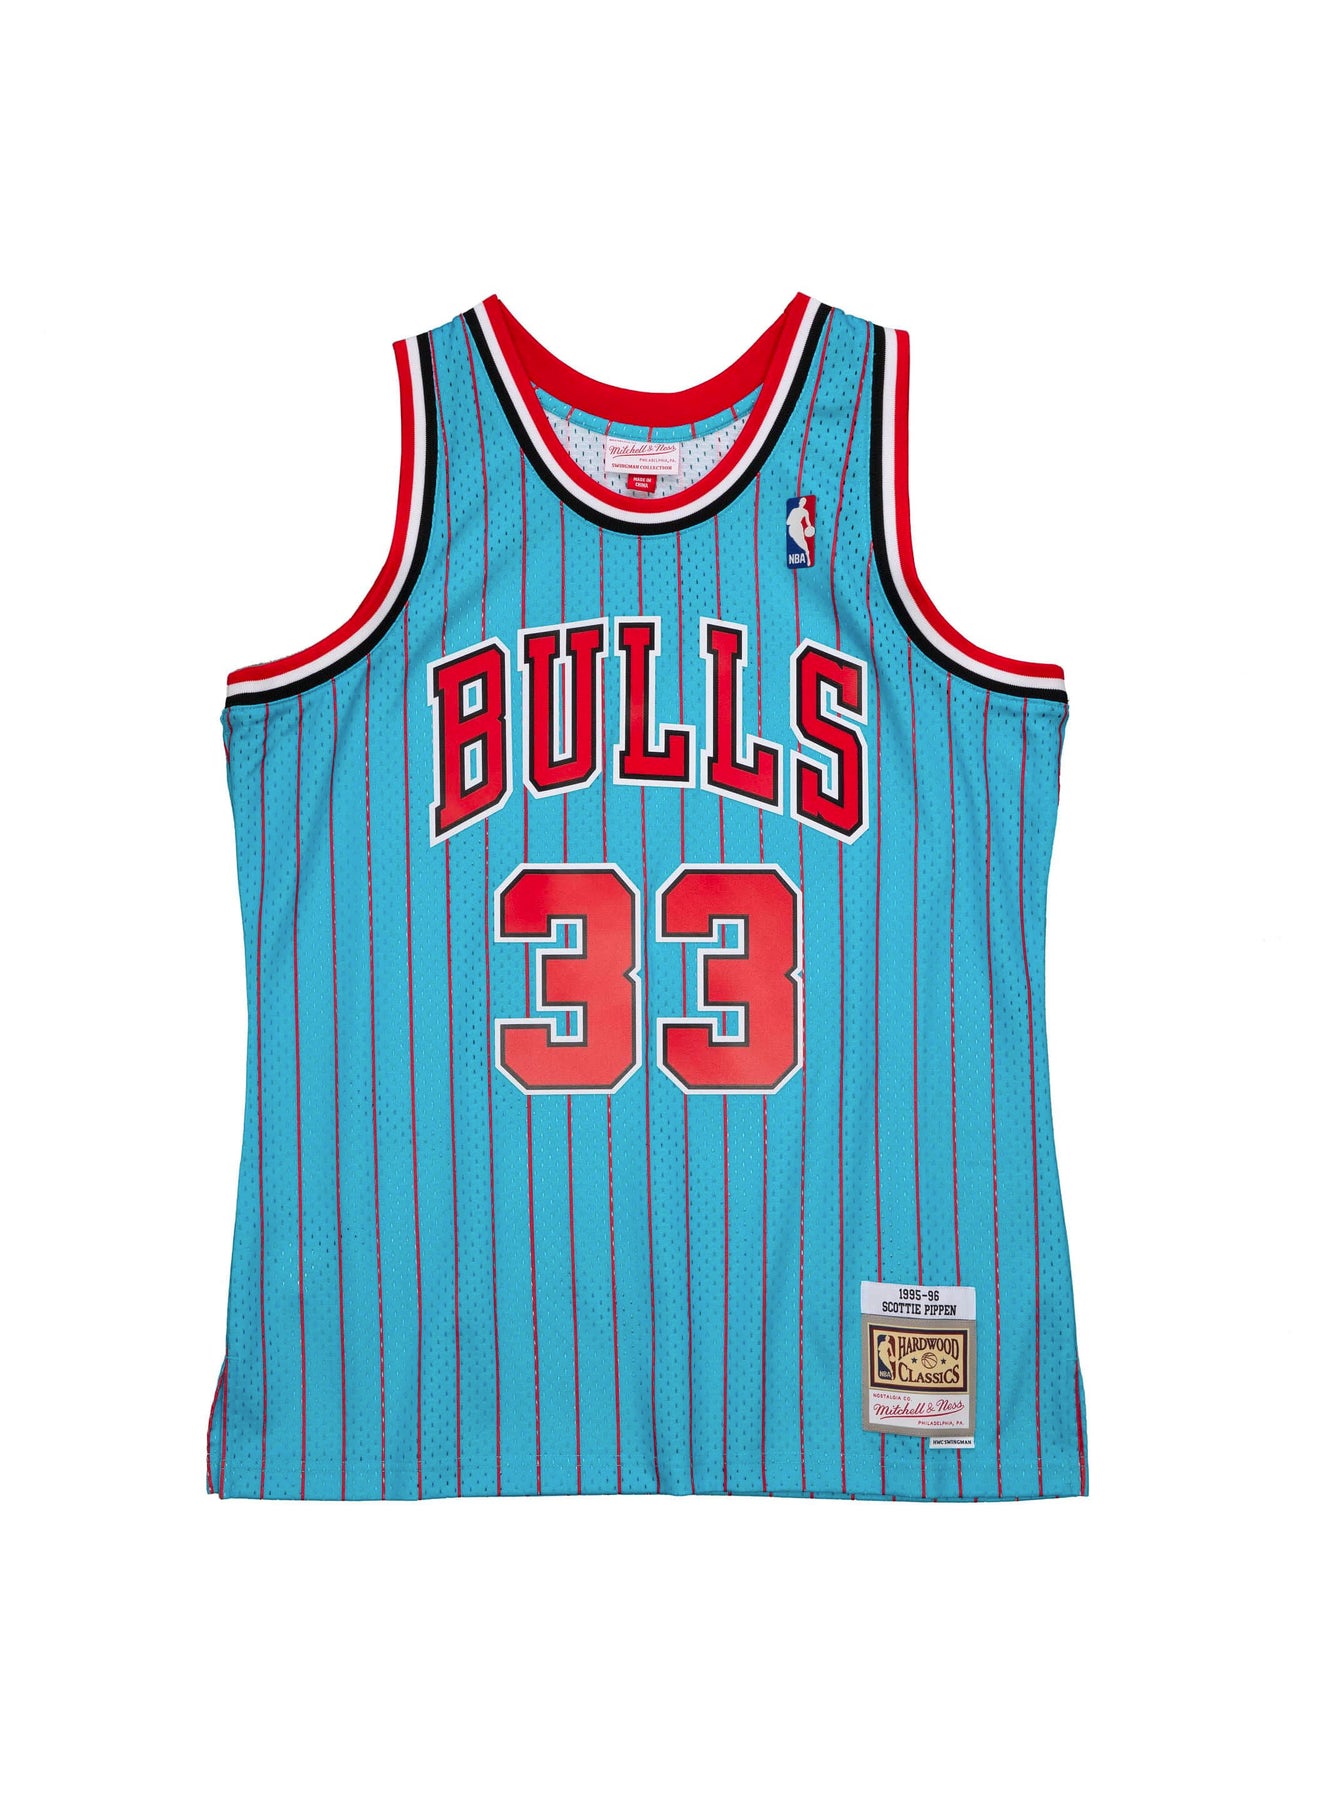 Chicago Bulls Scottie Pippen 1995-96 Hardwood Classics Alternate